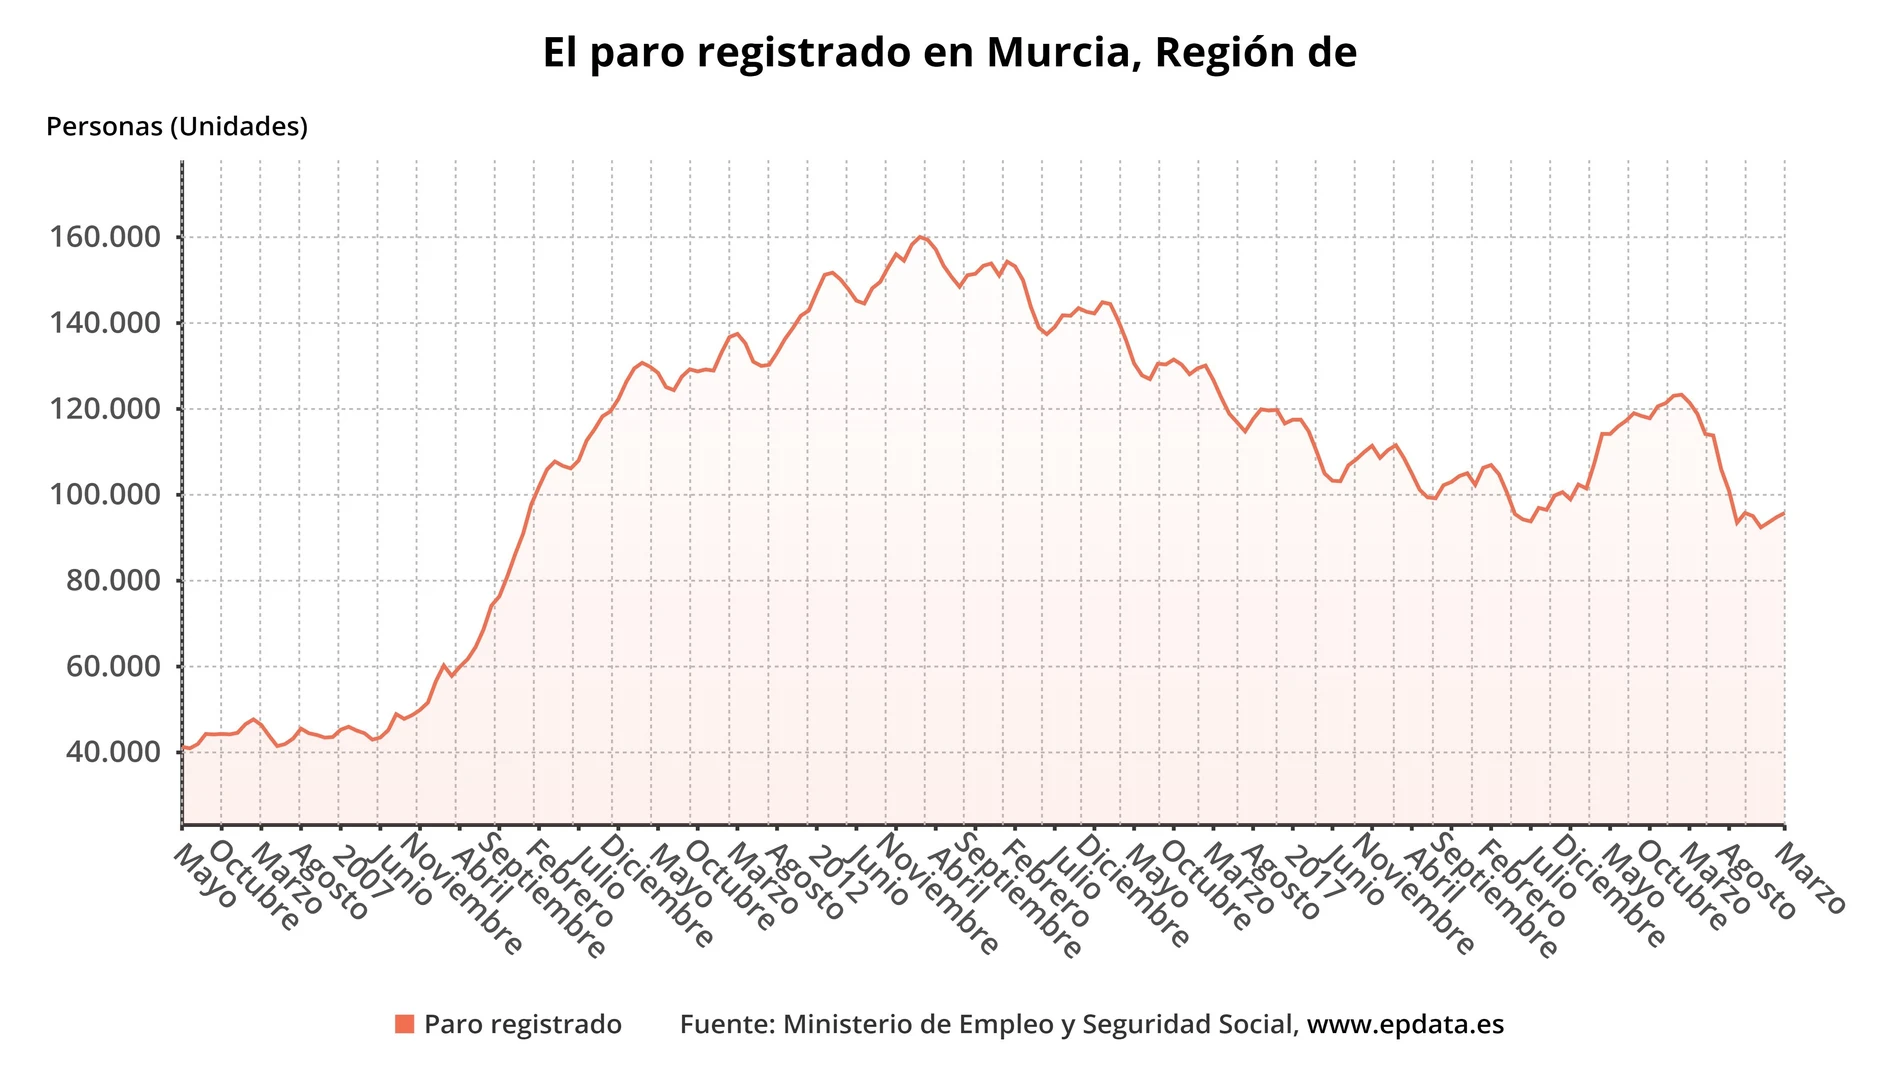 Paro registrado en la Región de Murcia